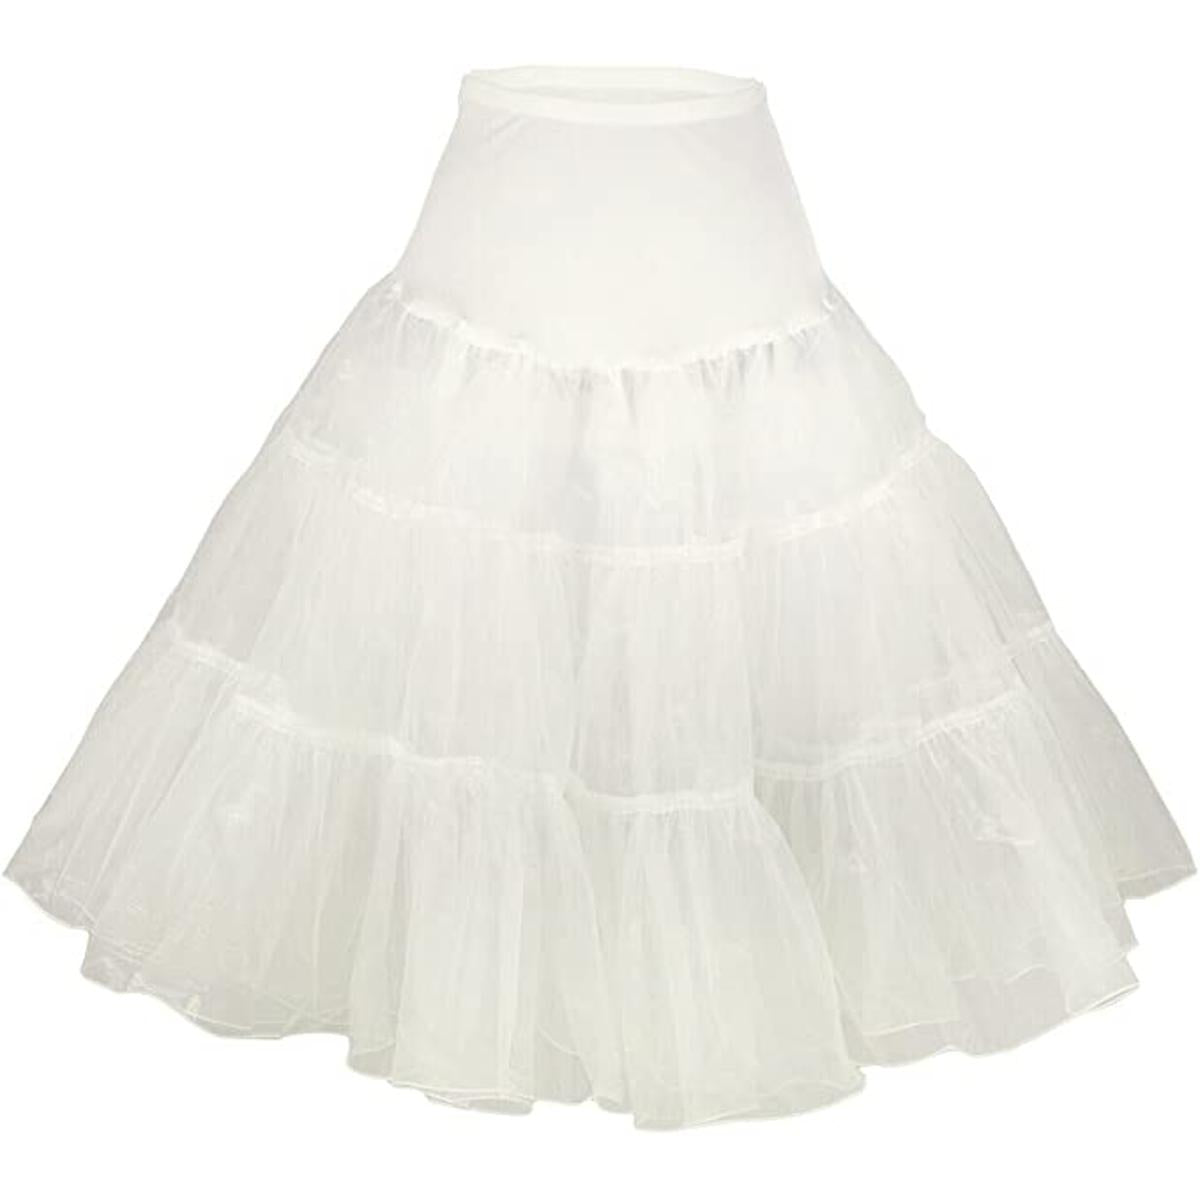 Tidetell Vintage Women's 50s Petticoat (XL White) Crinoline Tutu Underskirt 26" (FBA)